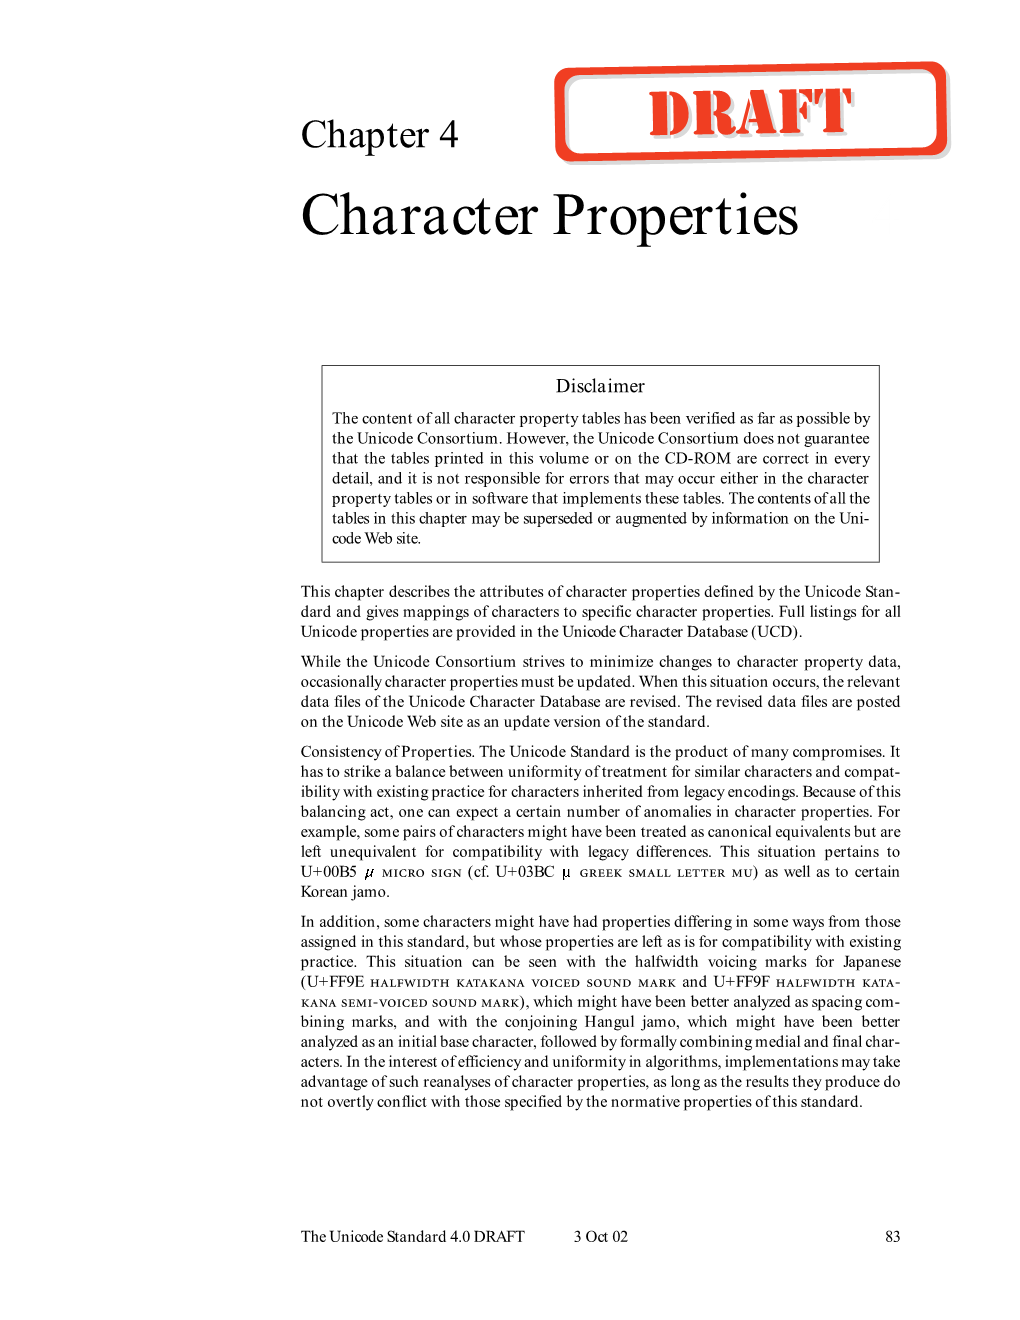 Character Properties 4